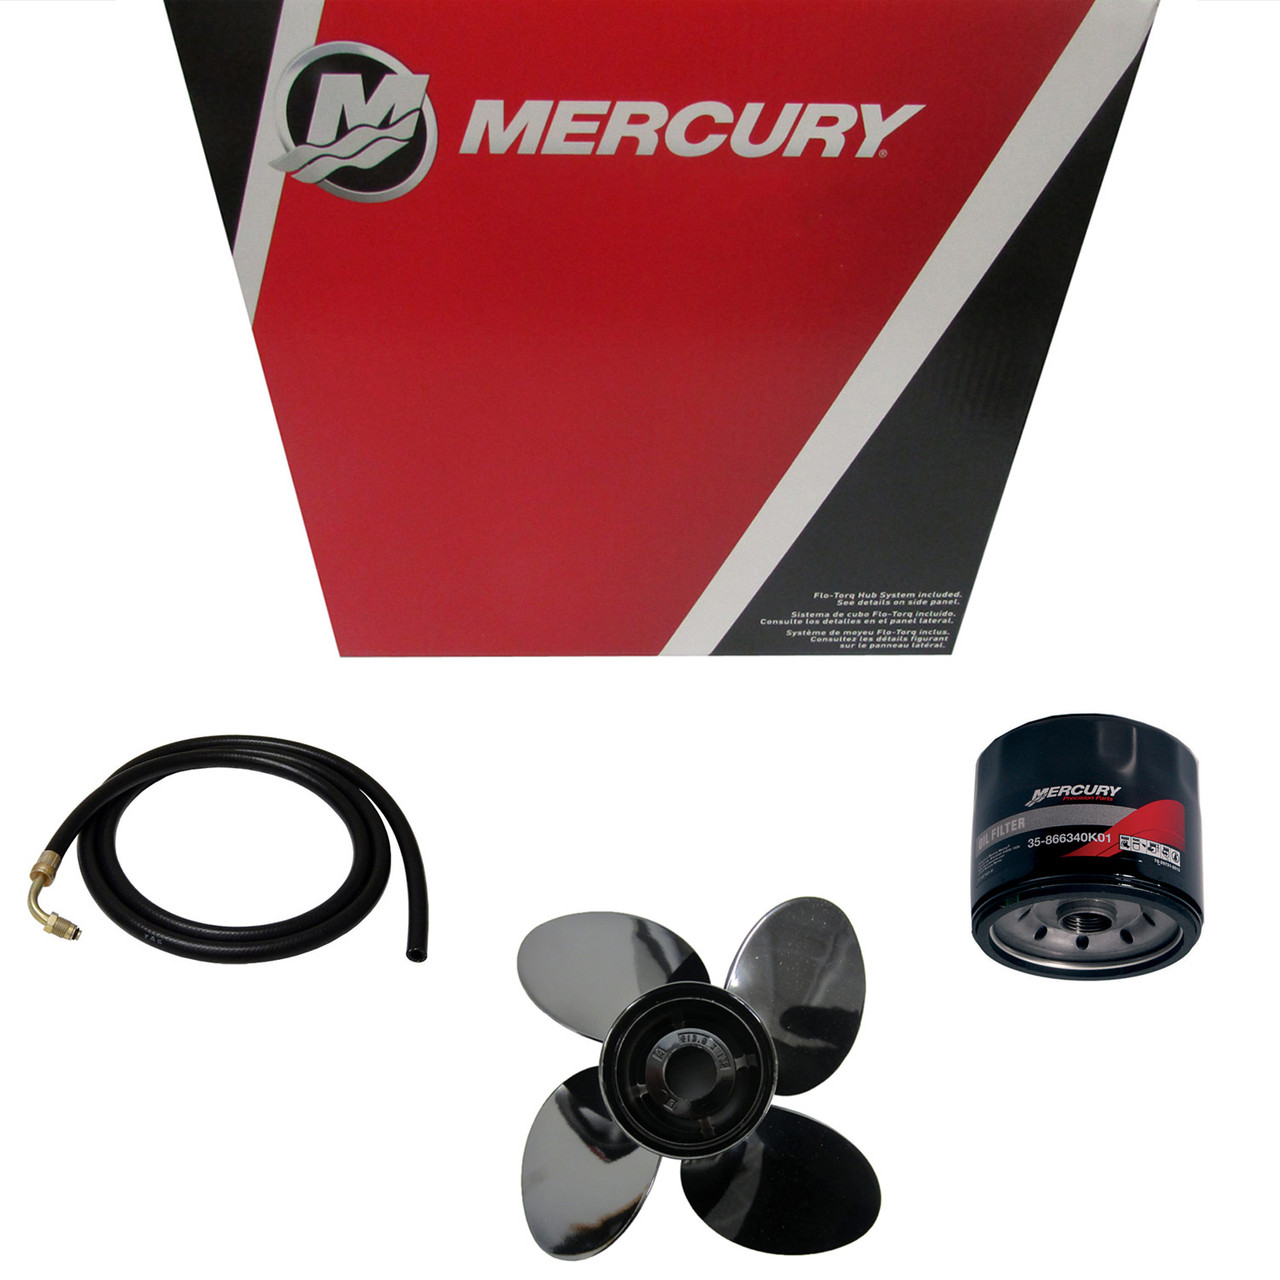 Mercury Marine / Mercruiser New OEM Propwrench 1 1/16, 859046Q4